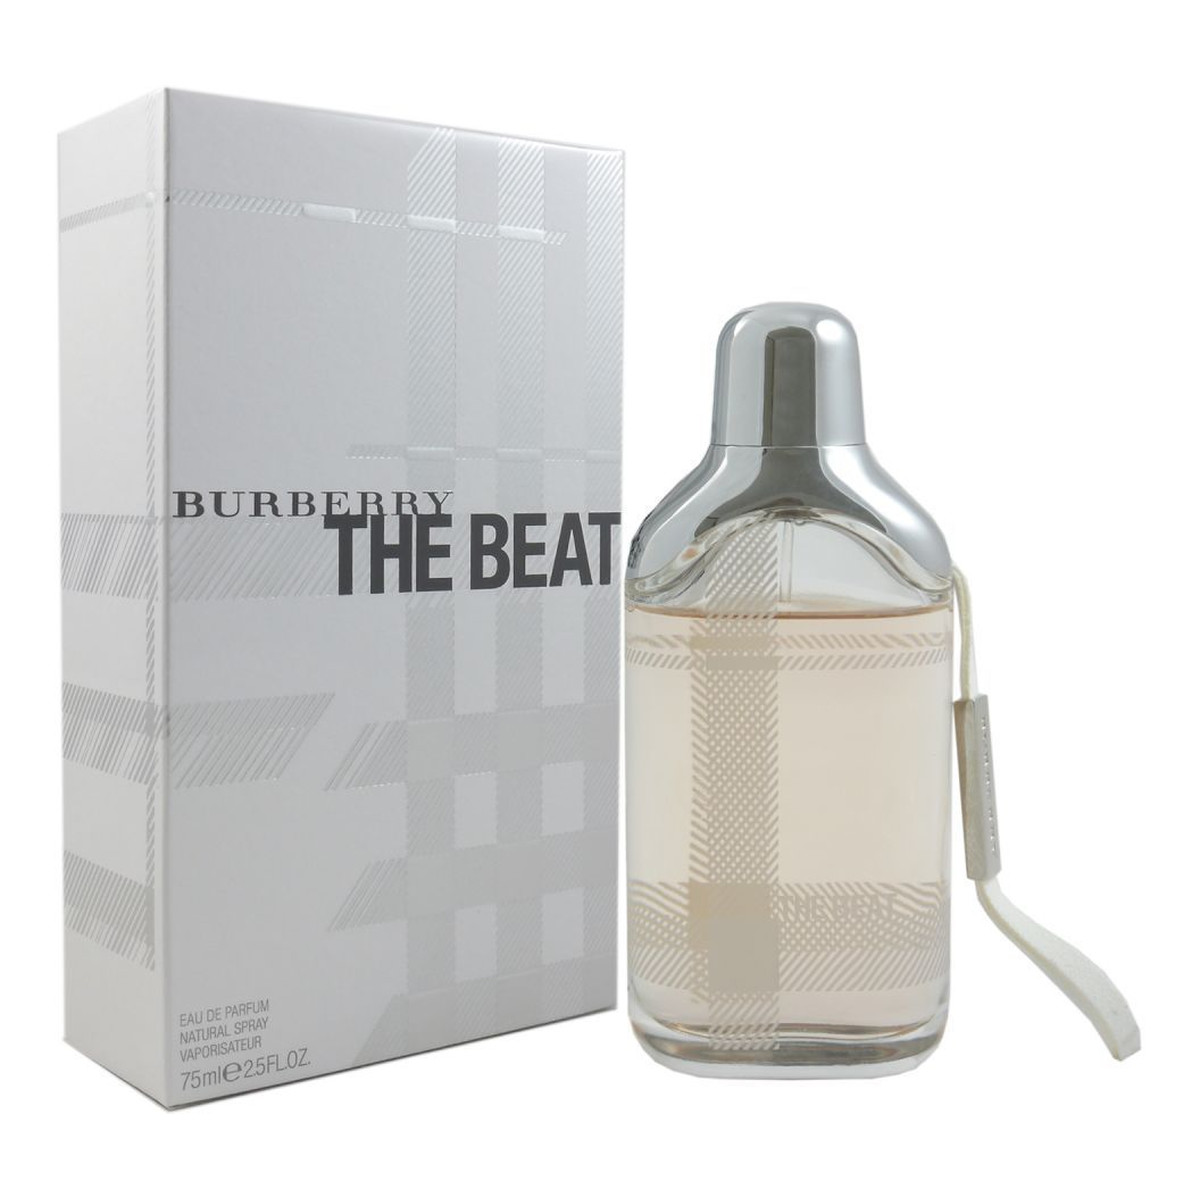 Burberry The Beat woda perfumowana 75ml